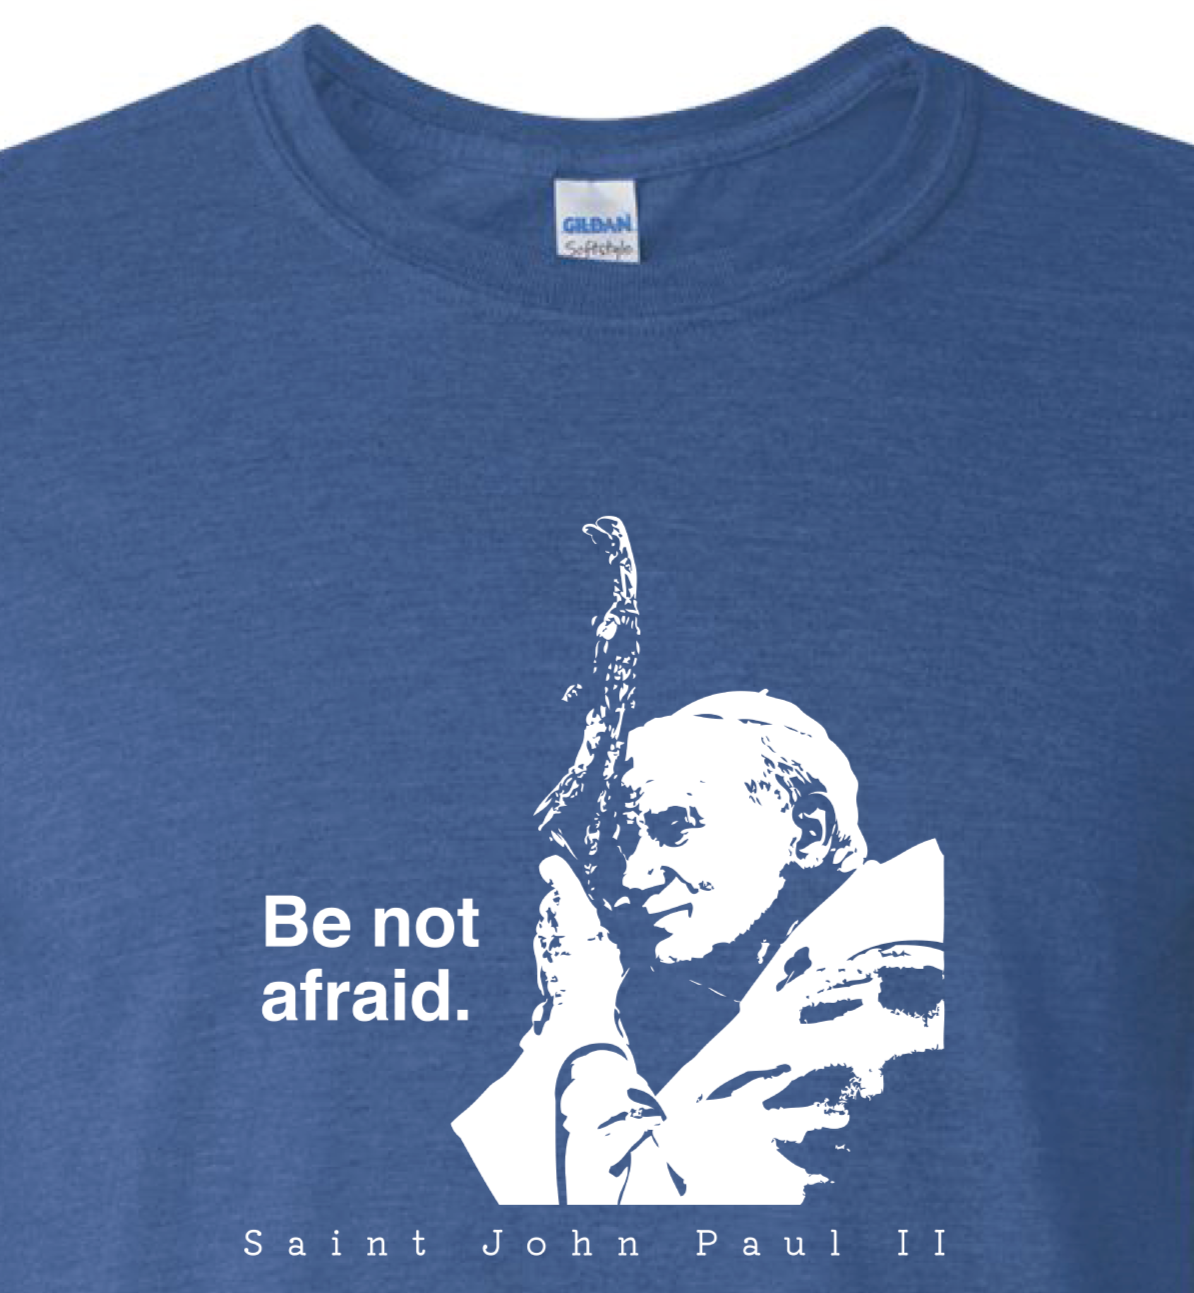 Be Not Afraid - St. John Paul II T Shirt